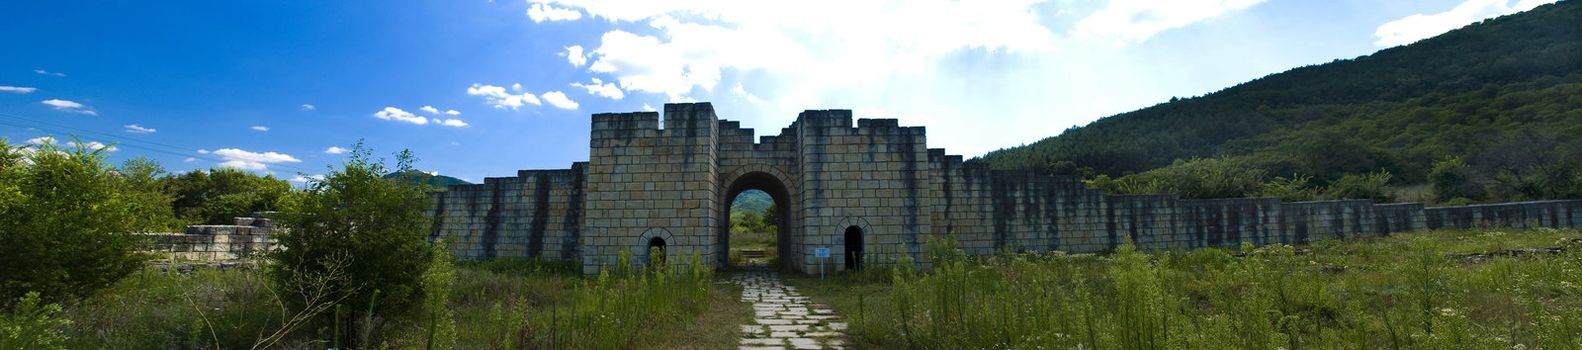 Ancient ruins Veliki Preslav Bulgarian landmark panoramic view